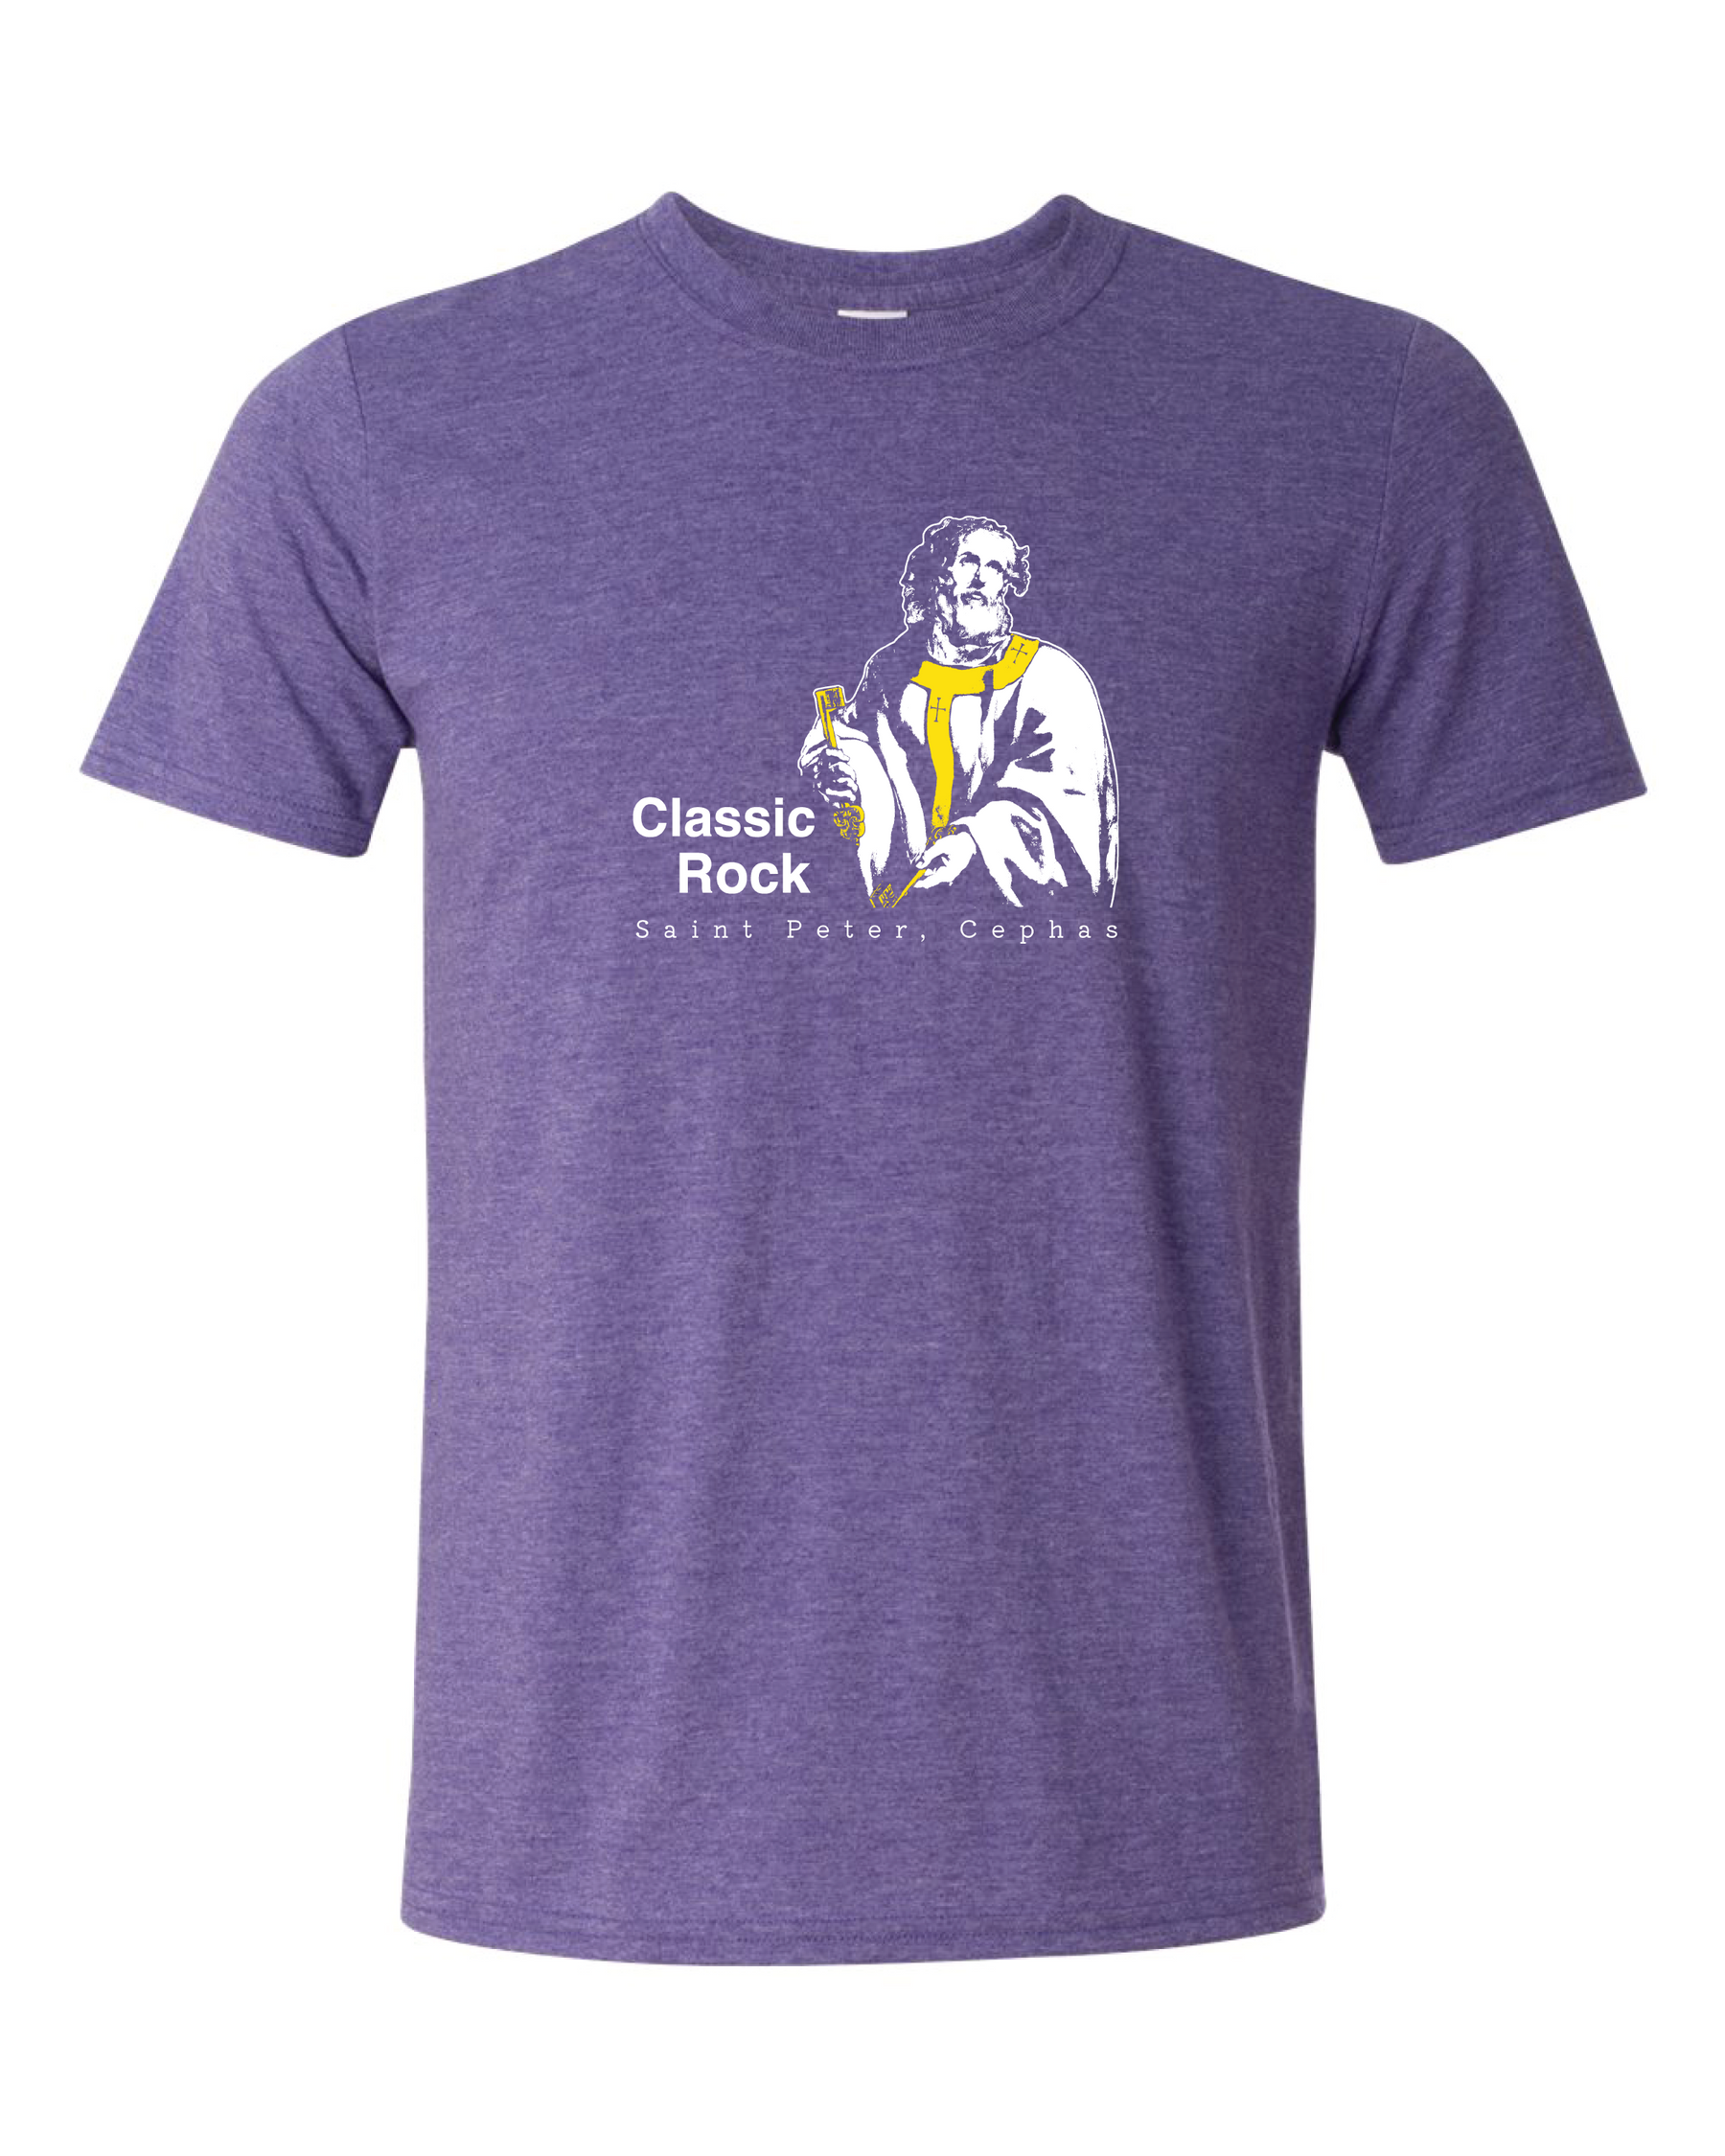 Classic Rock - St. Peter, Cephas T Shirt